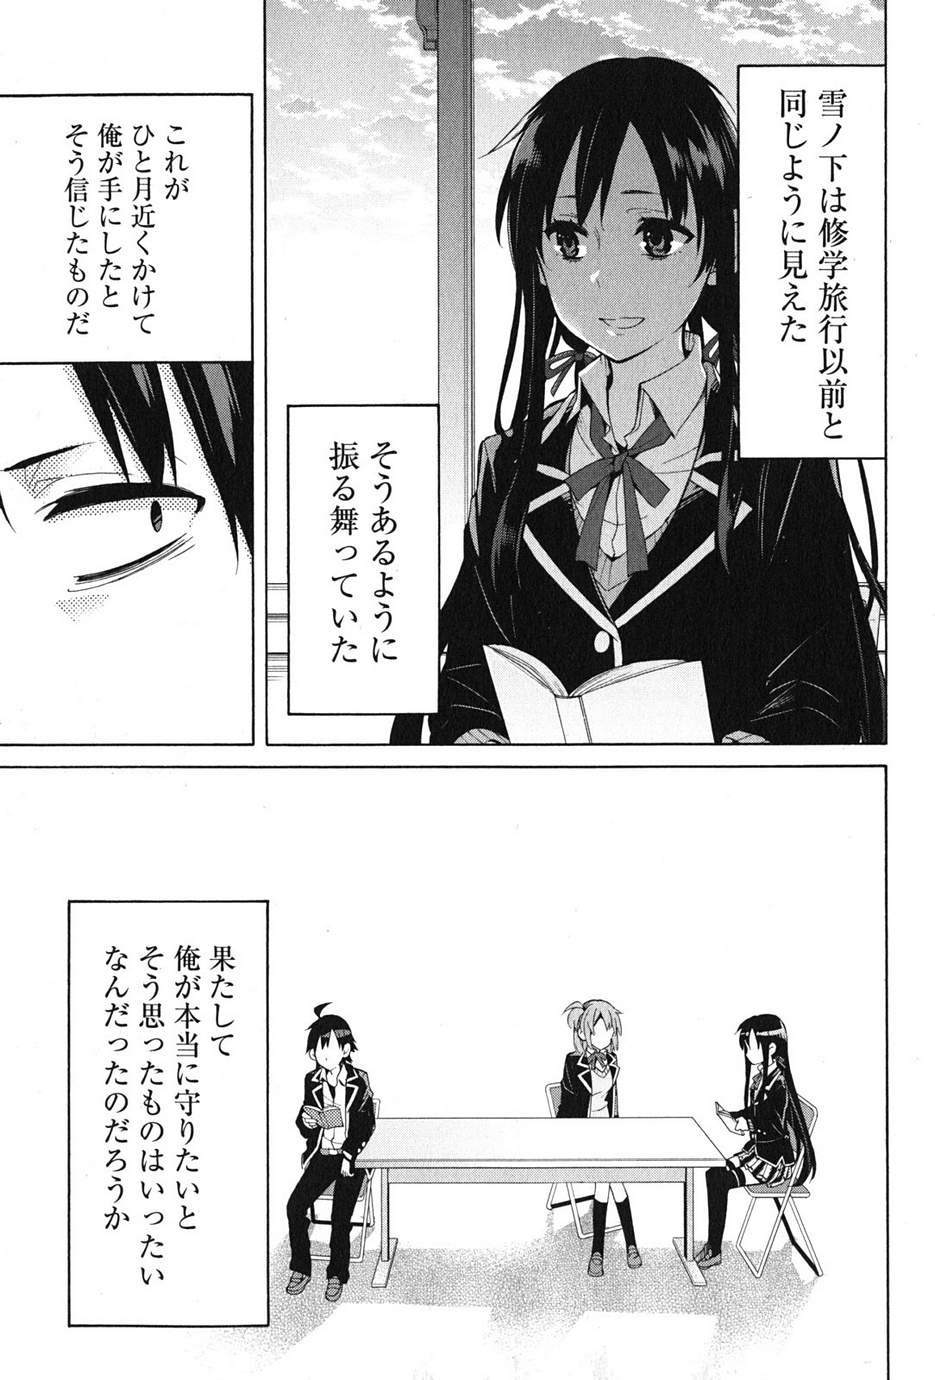 Yahari Ore no Seishun Rabukome wa Machigatte Iru. - Monologue - Chapter 34 - Page 48